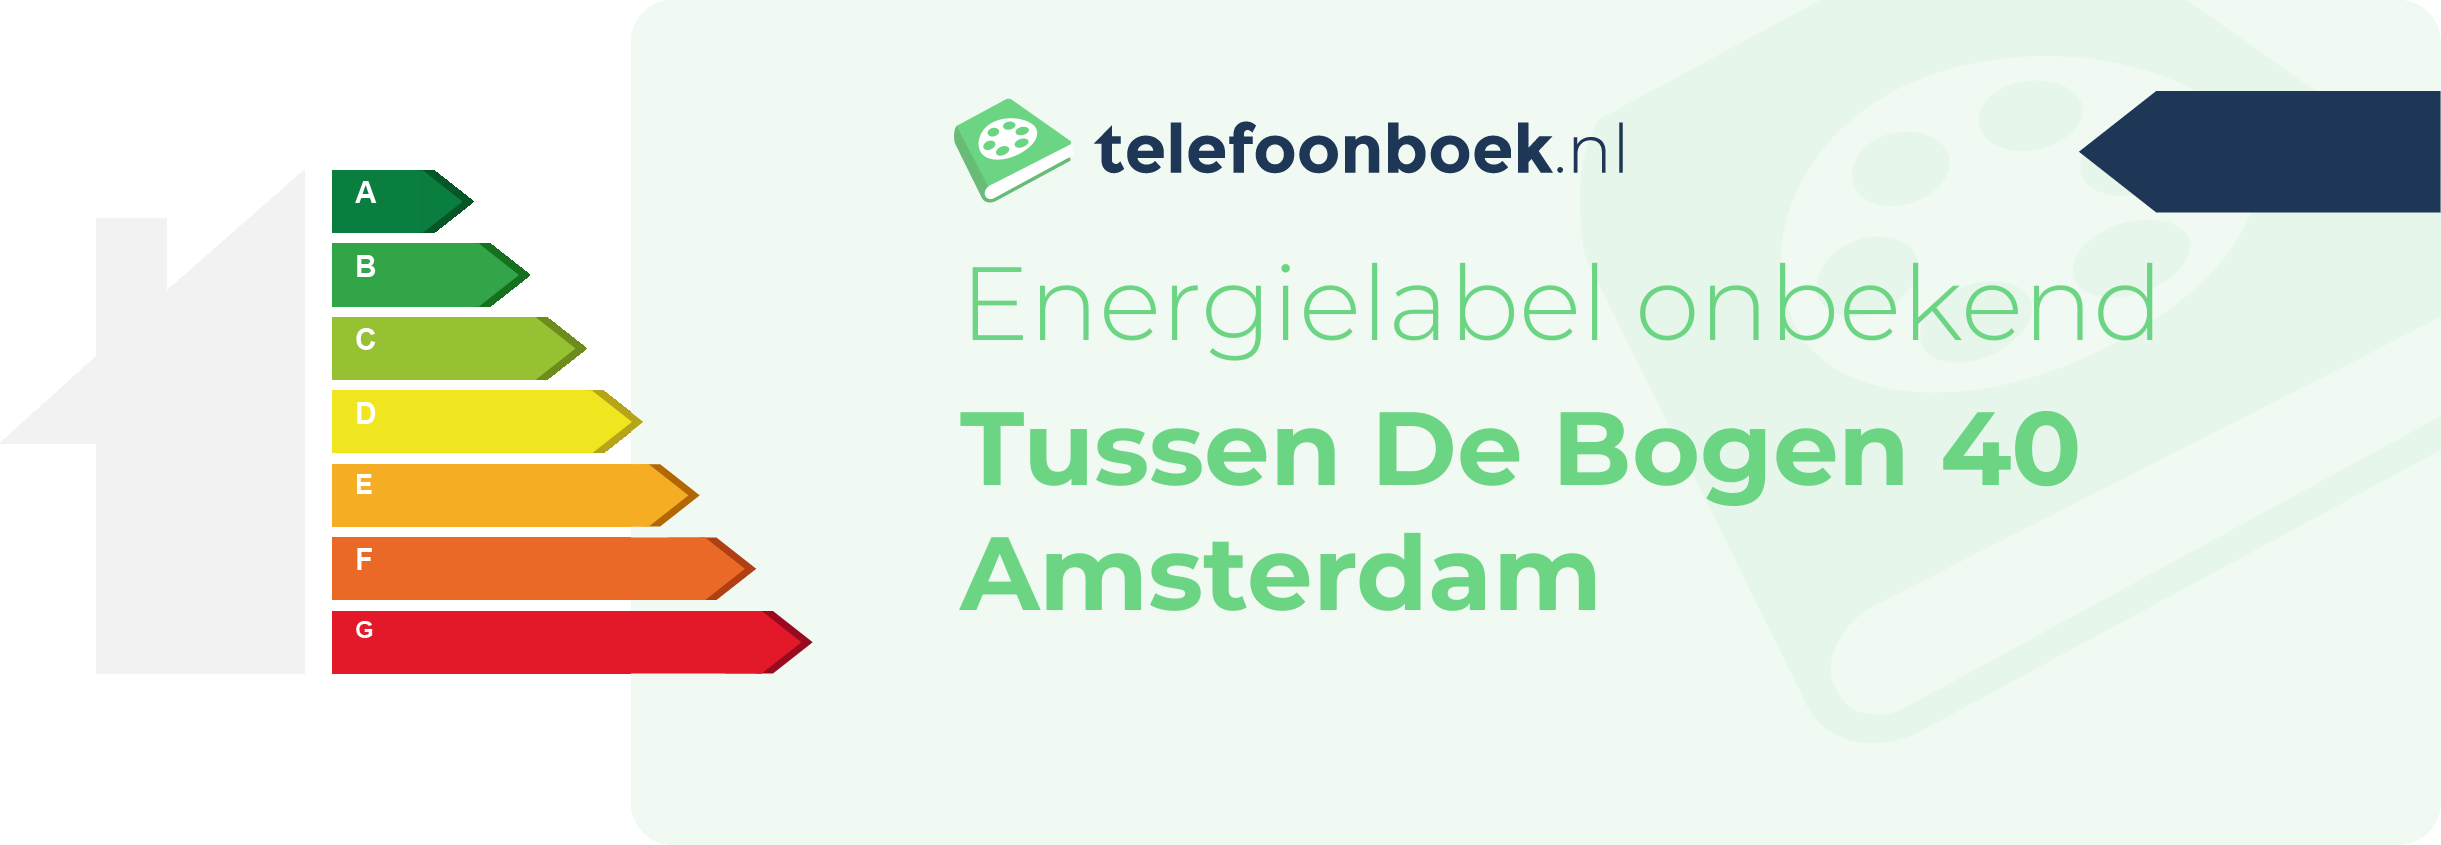 Energielabel Tussen De Bogen 40 Amsterdam